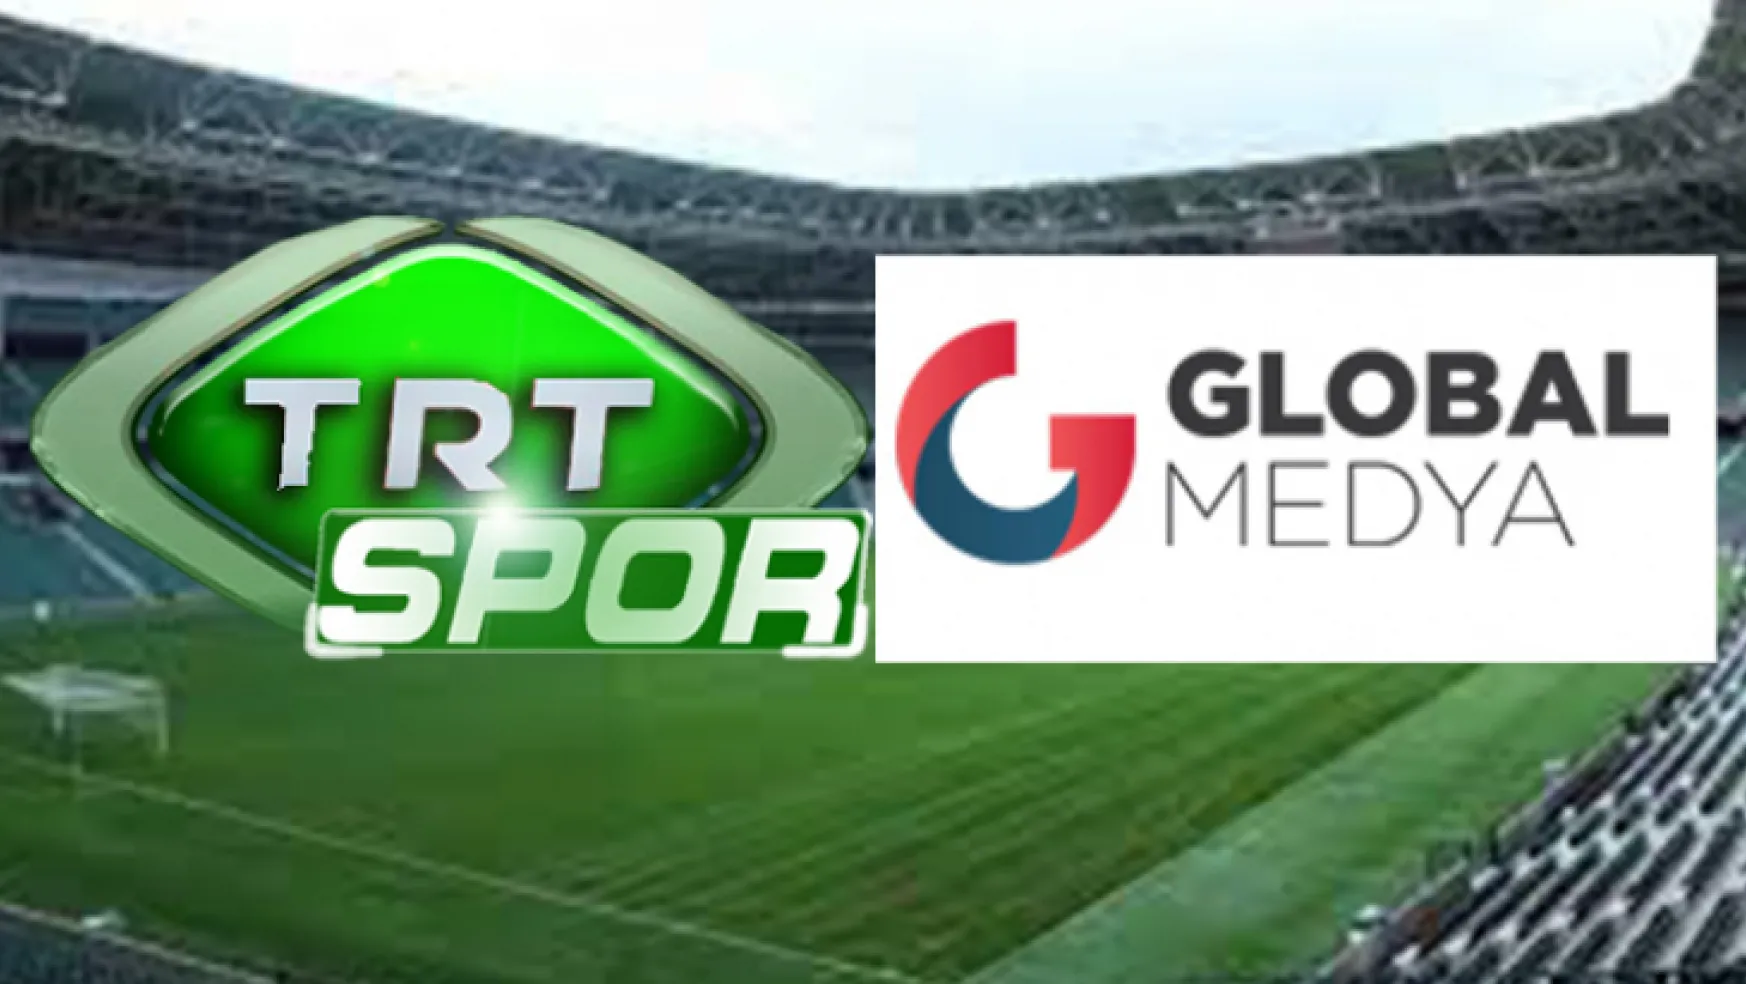 Kocaelispor'un maçları TRT'de, reklam hakları Global Medya'da